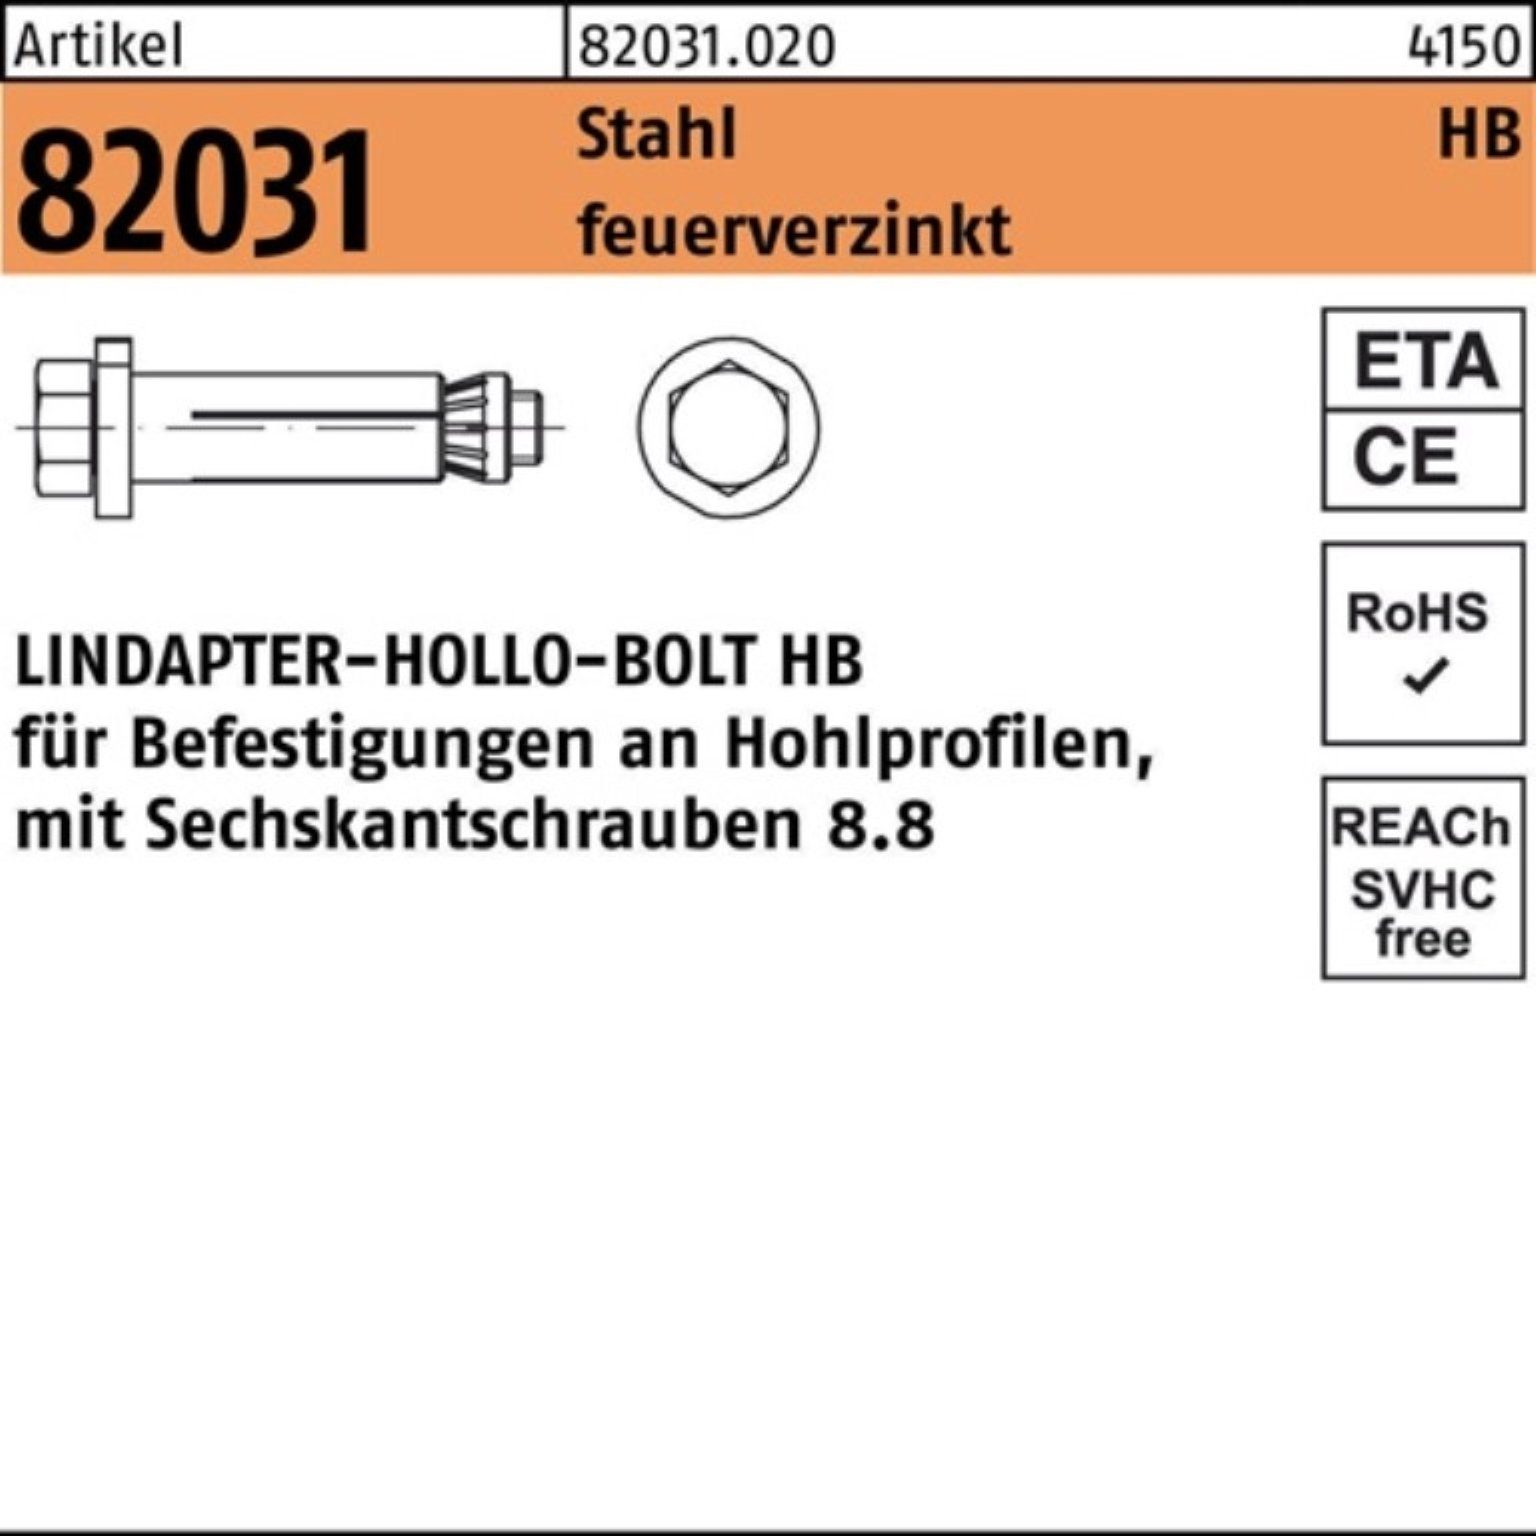 20-3 HB 82031 Hohlraumdübel R 6-ktschraube 100er Pack 8.8 fe Lindapter (150/86) Hohlraumdübel